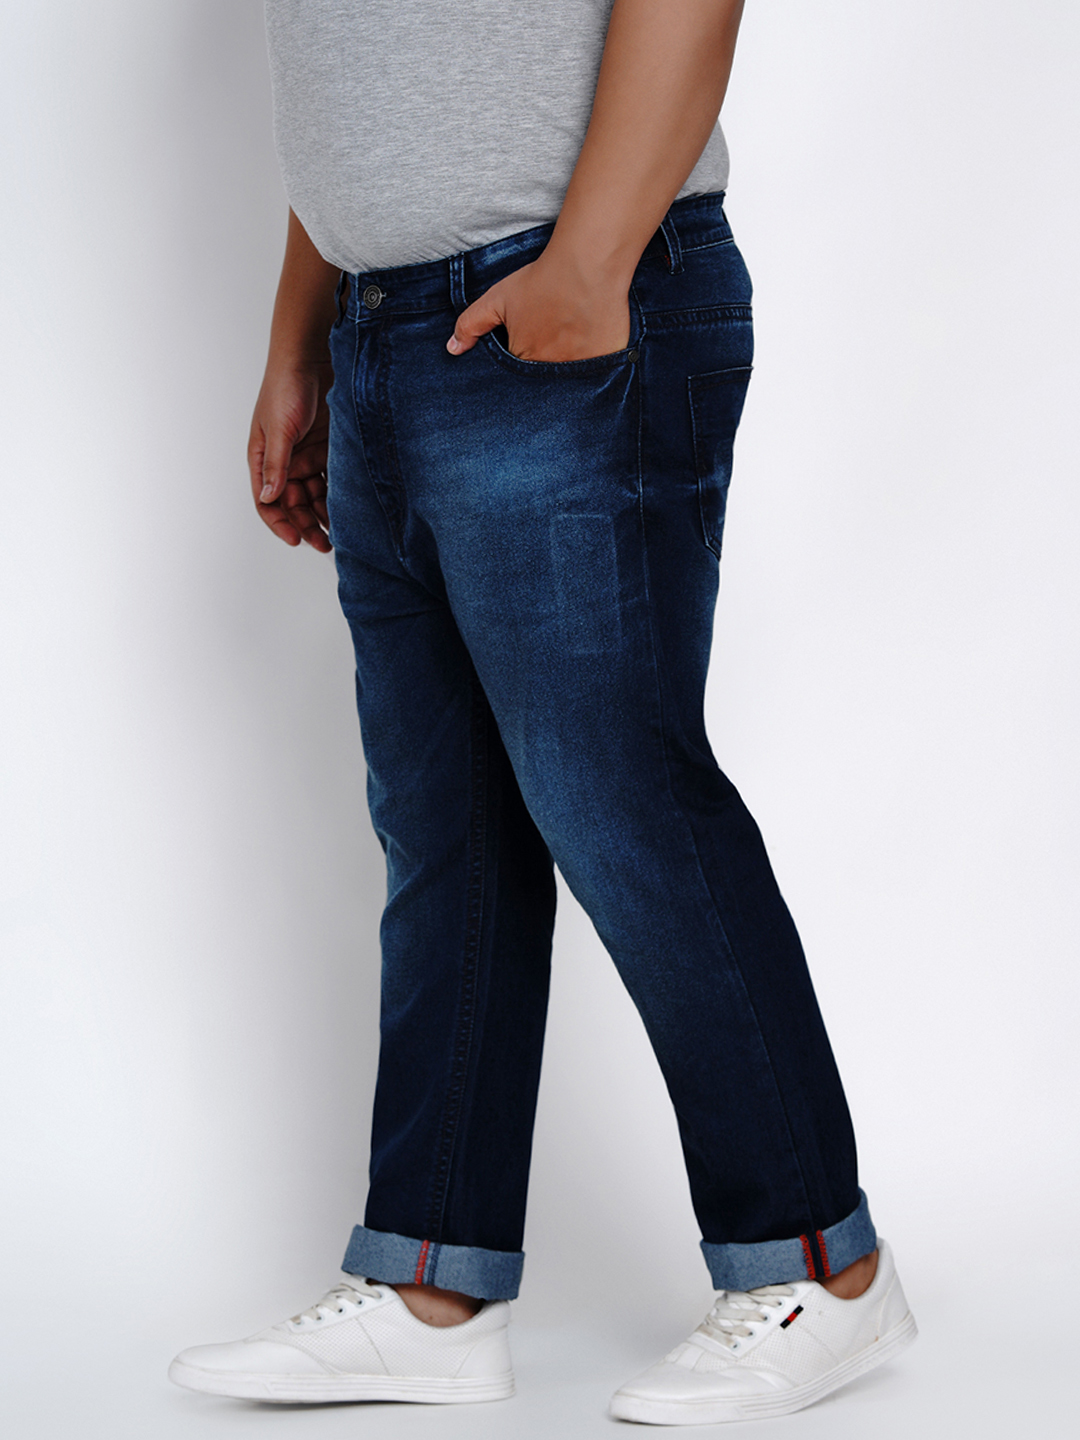 affordables/jeans/JPJ2014/jpj2014-4.jpg